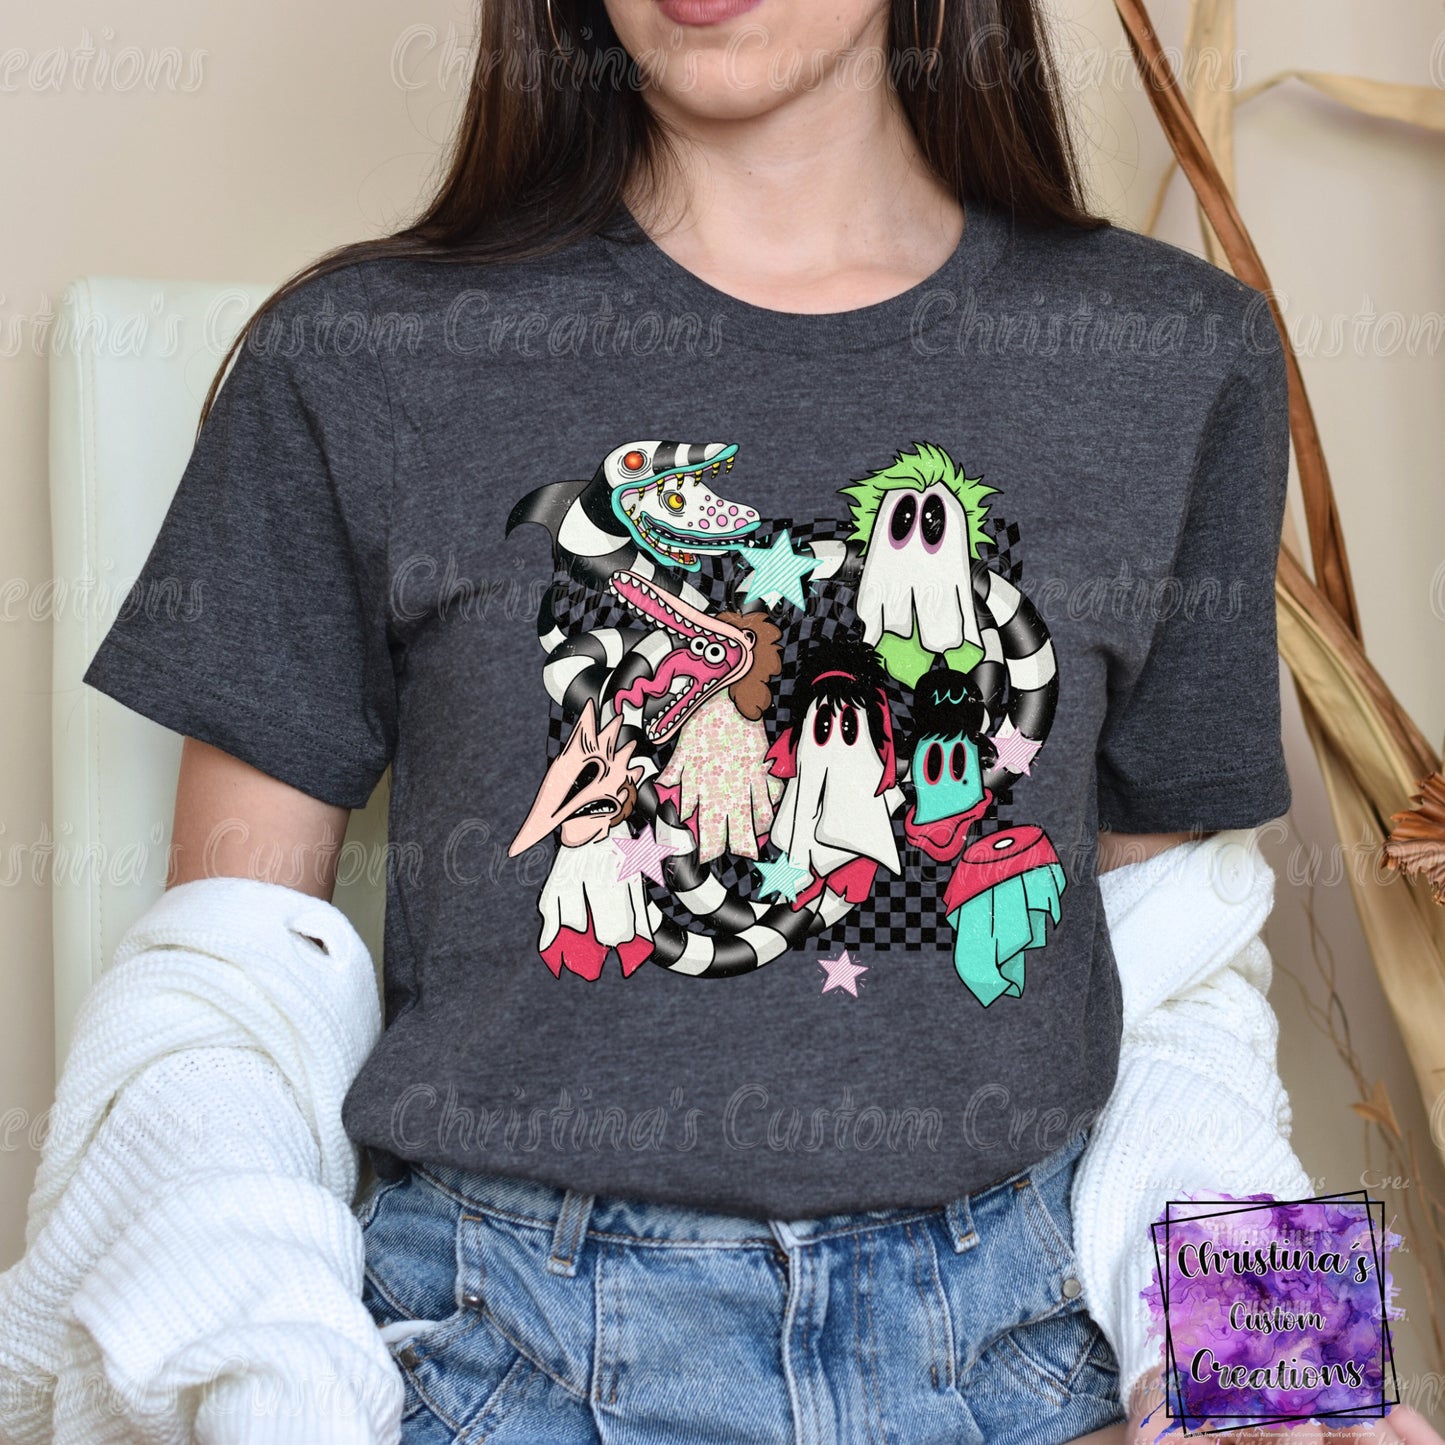 Sandworm Halloween T-Shirt | Trendy Halloween Shirt | Lydia Deetz Shirt | Fast Shipping | Super Soft Shirts for Men/Women/Kid's